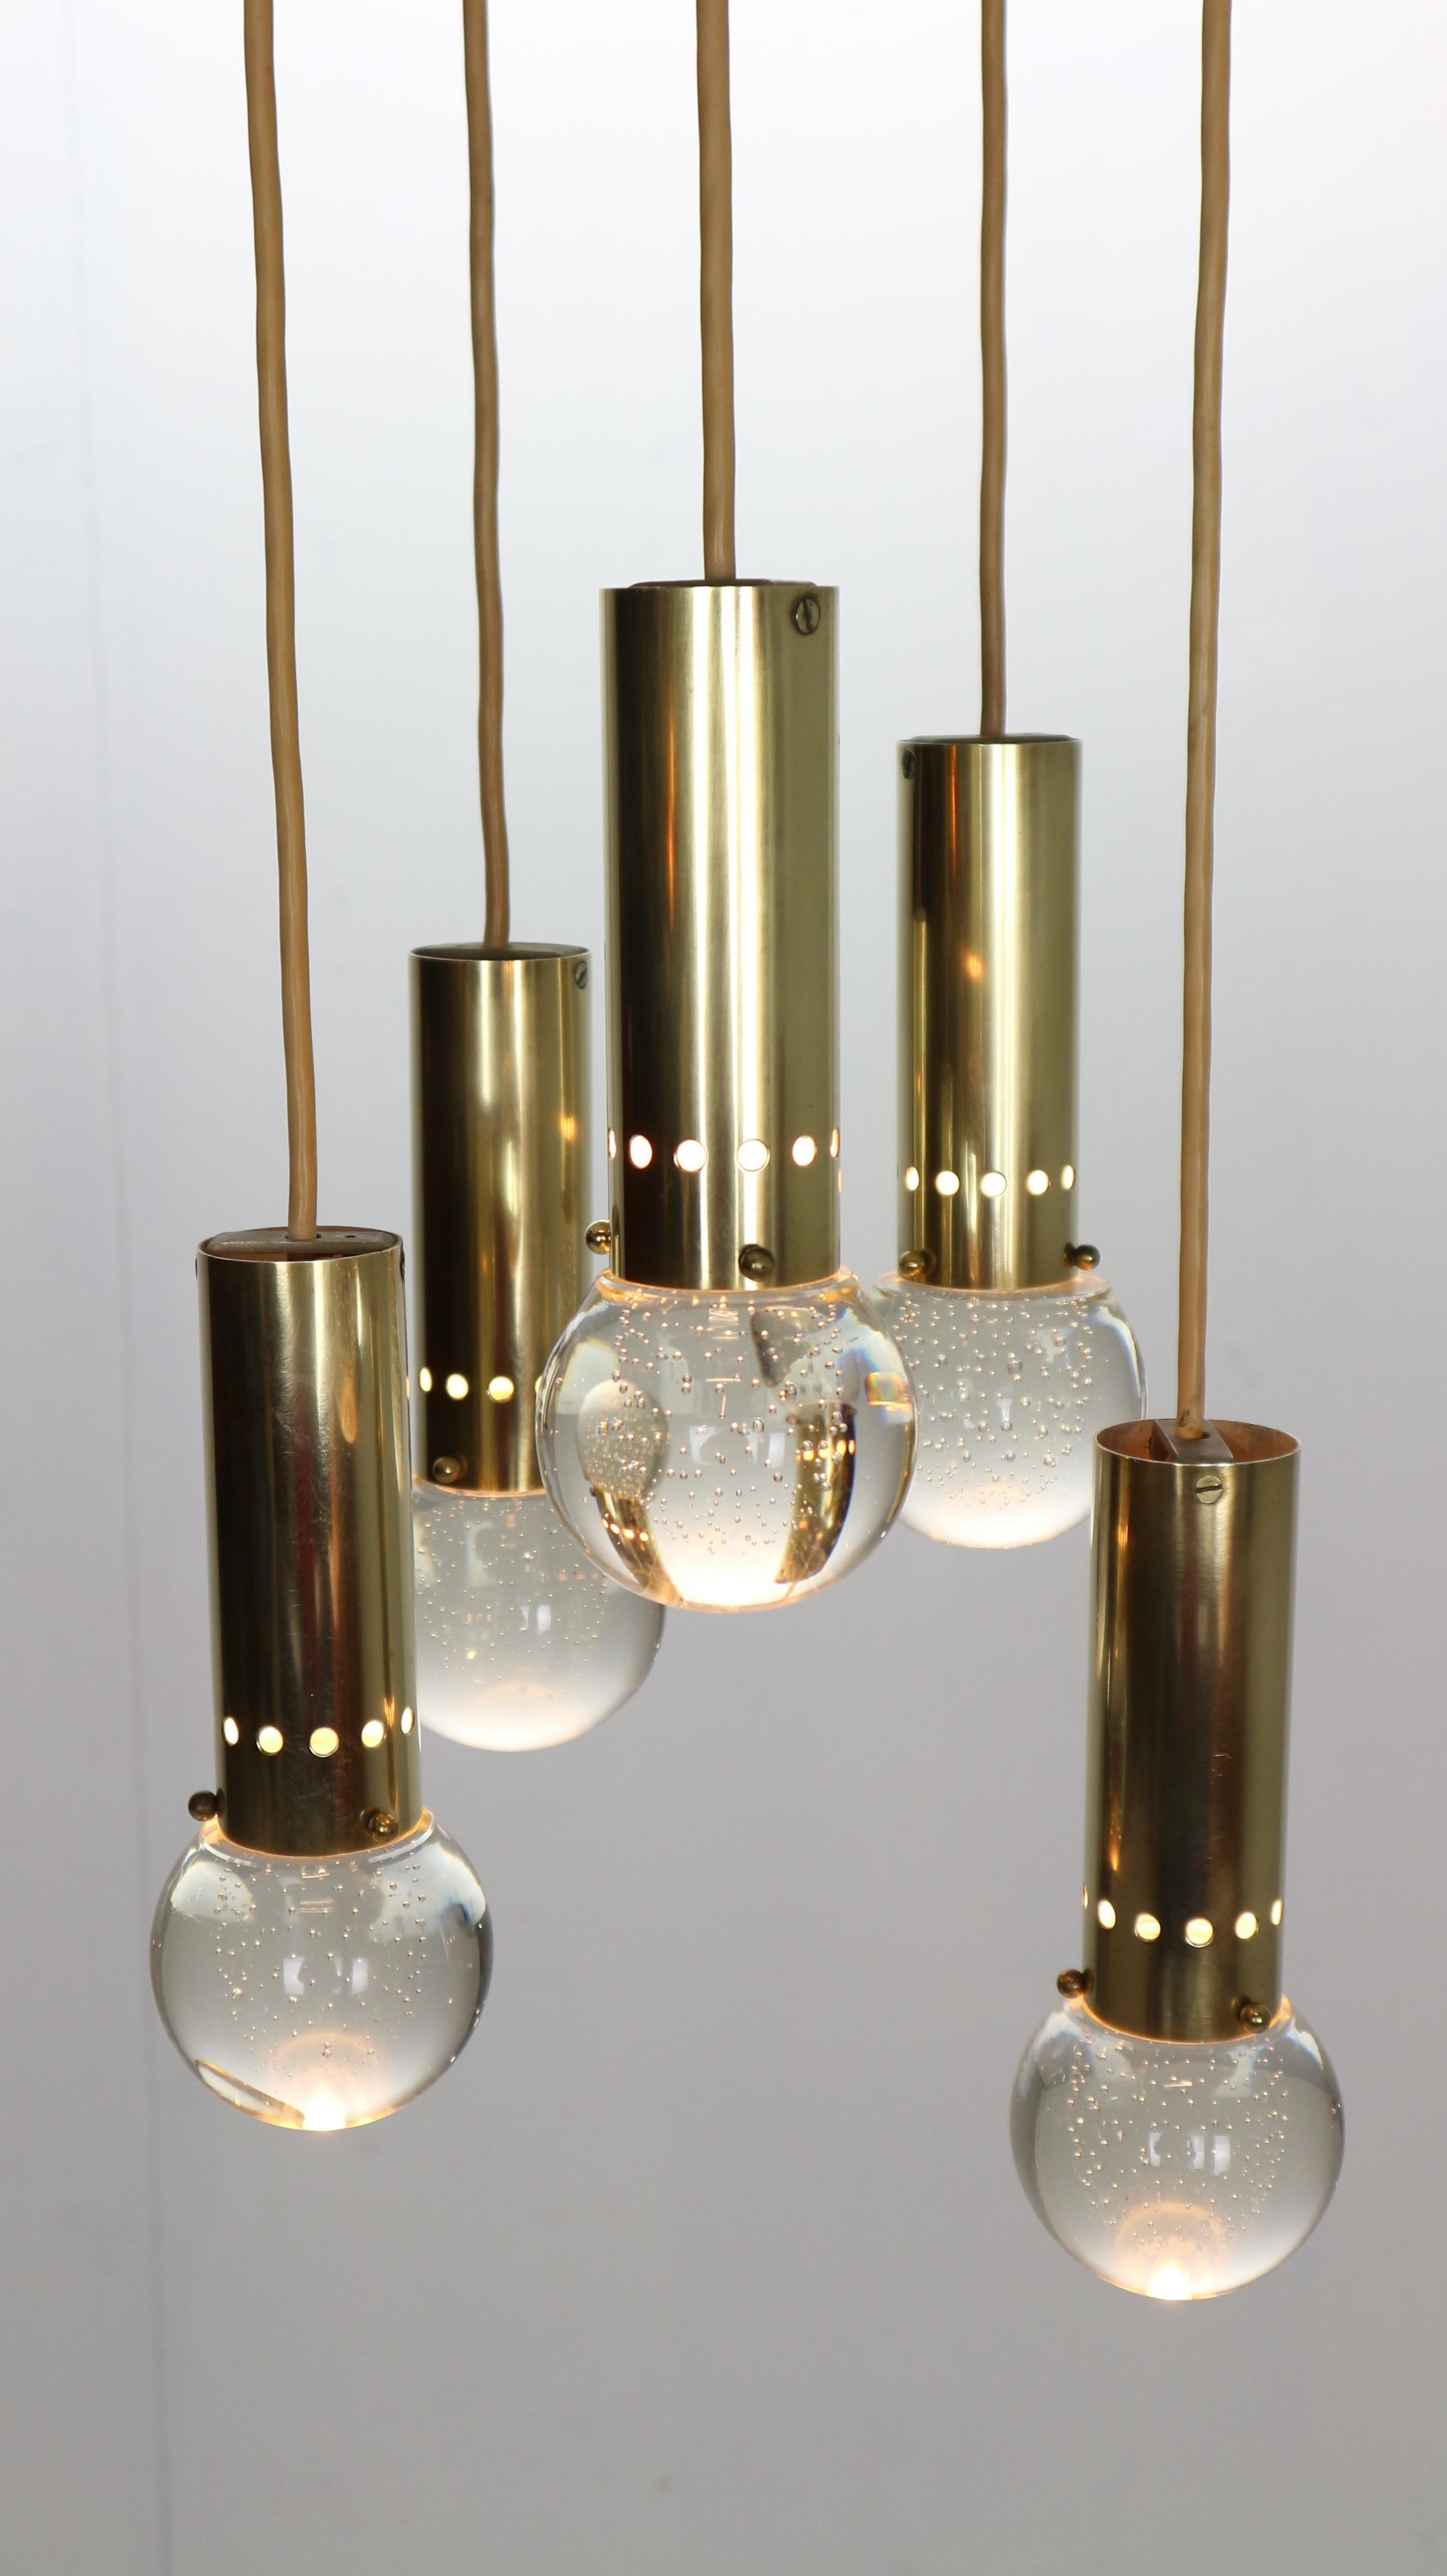 Gino Sarfatti SP/ 16 For Arteluce Unique Brass Bubble Pendant Lamp, 1950, Italy For Sale 1